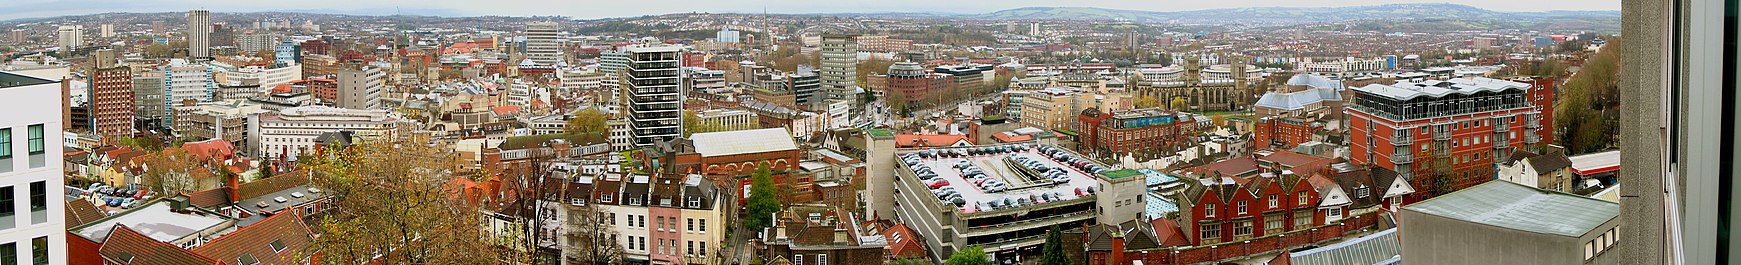 Ein Panoramablick über ein Stadtbild aus Bürogebäuden, Altbauten, Kirchtürmen und einem Parkhaus. In der Ferne sind Hügel.